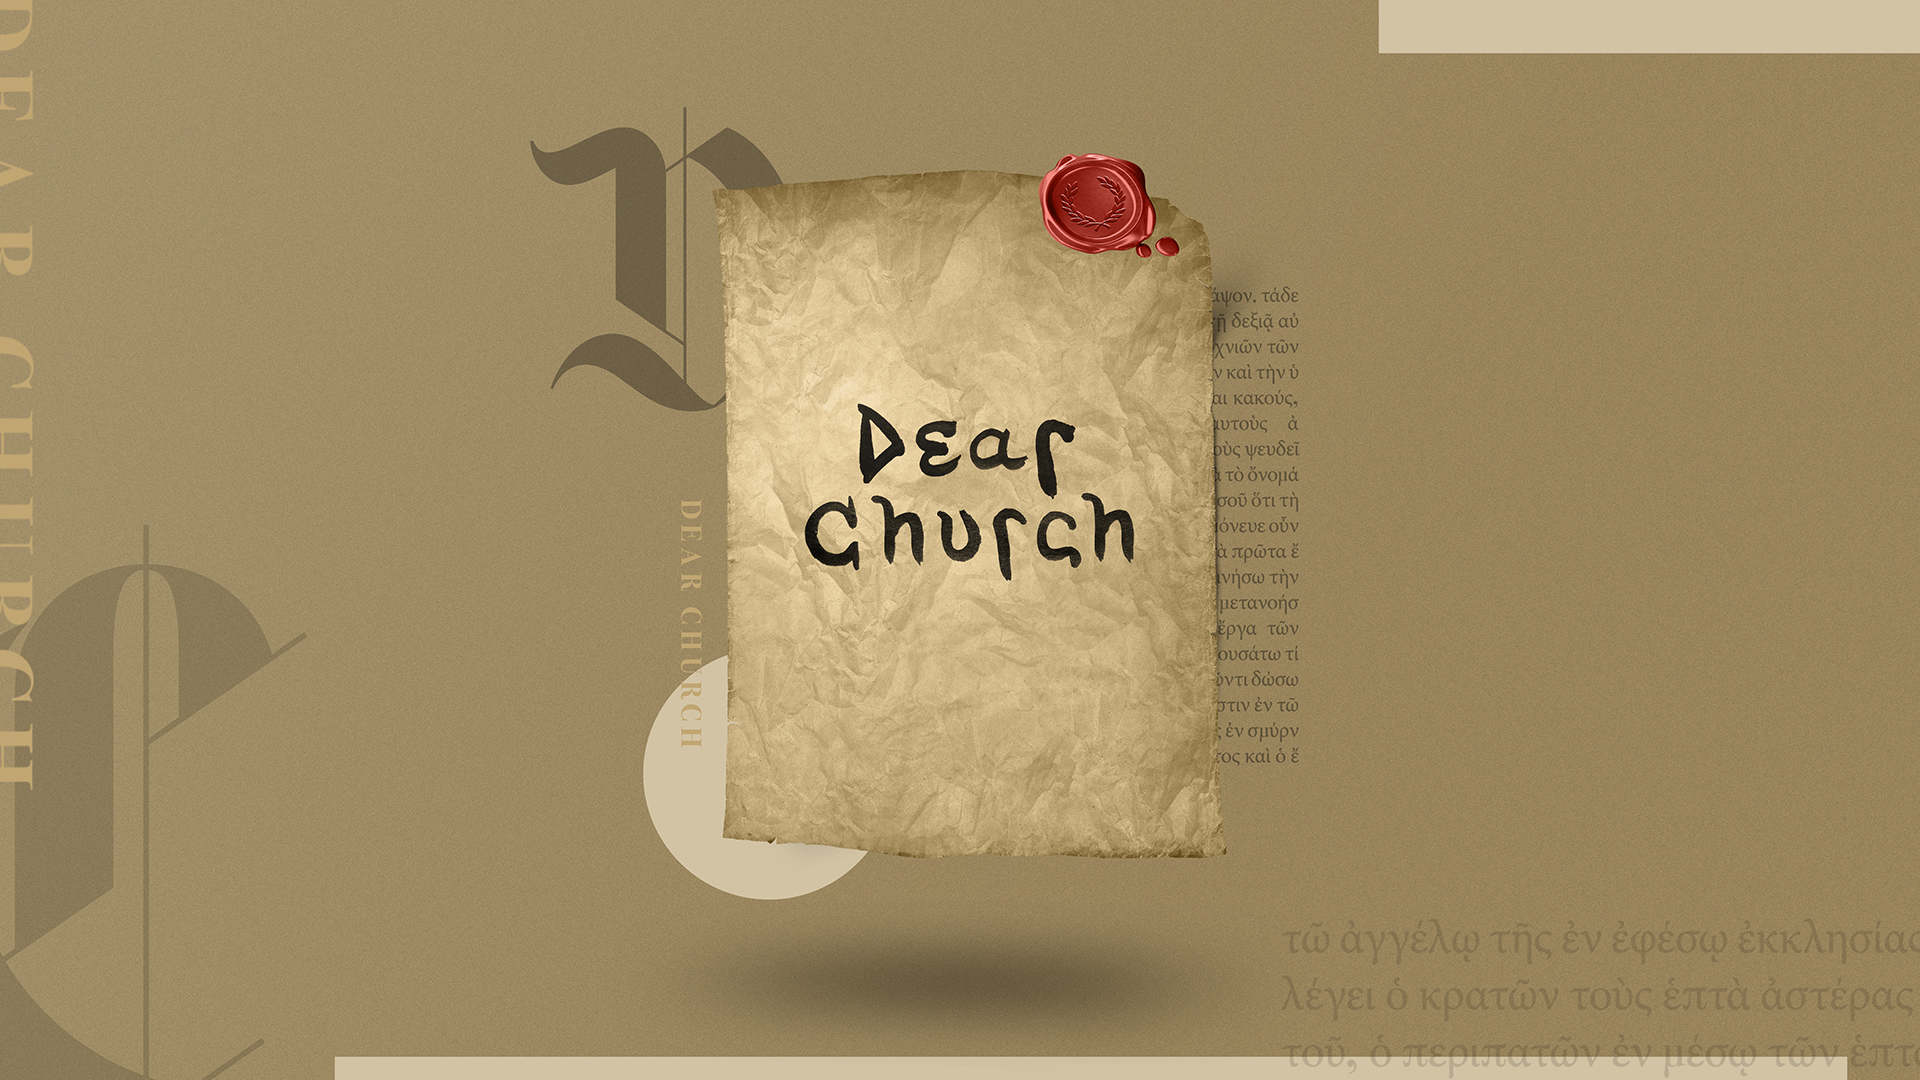 Dear Church Series